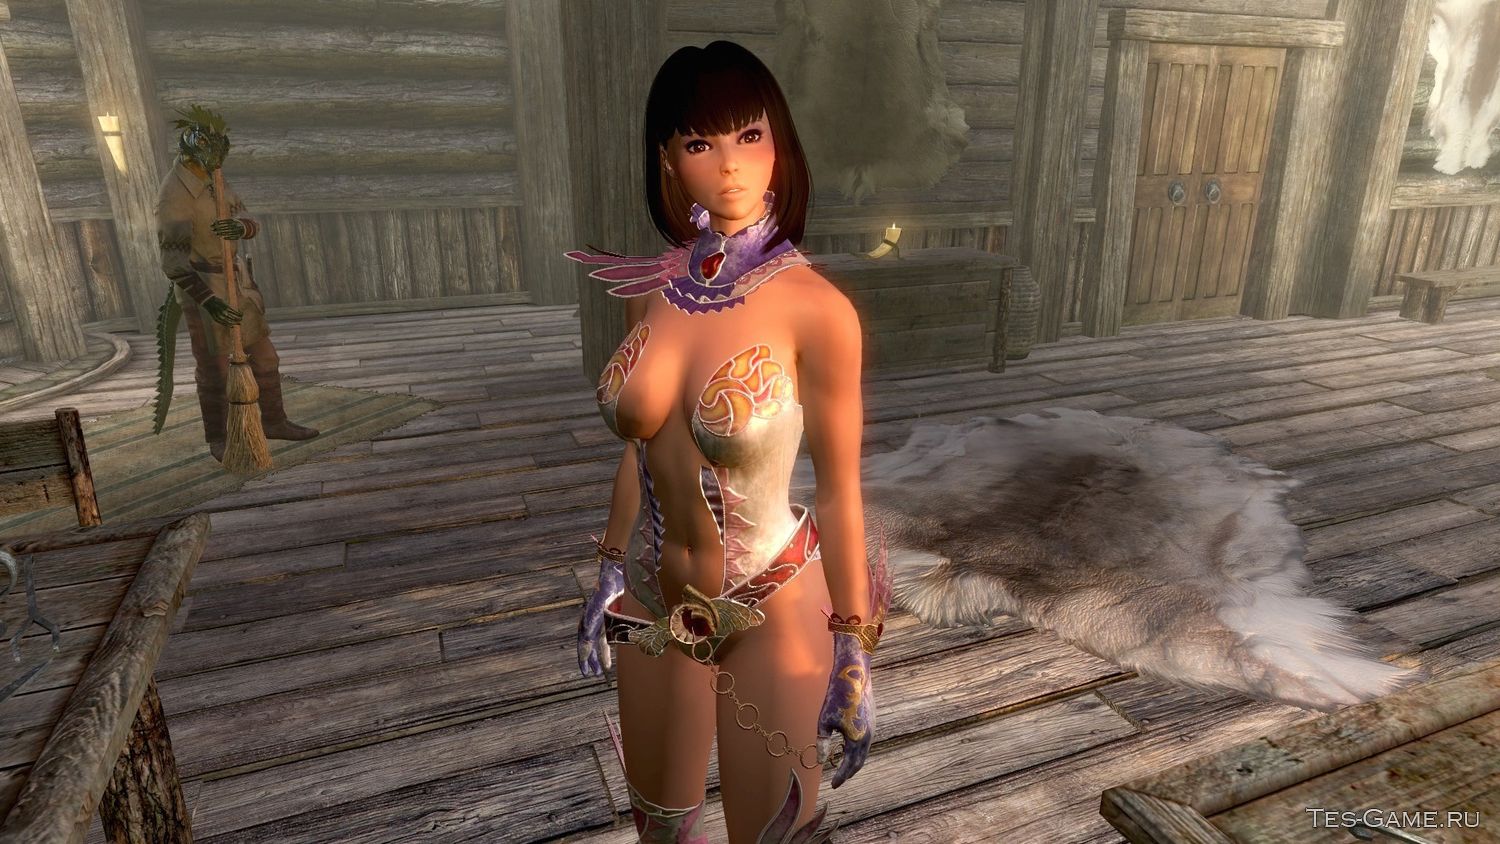 Мод для Skyrim добавляет новую спутницу с UUNP HDT телом по имени Жасмин. 